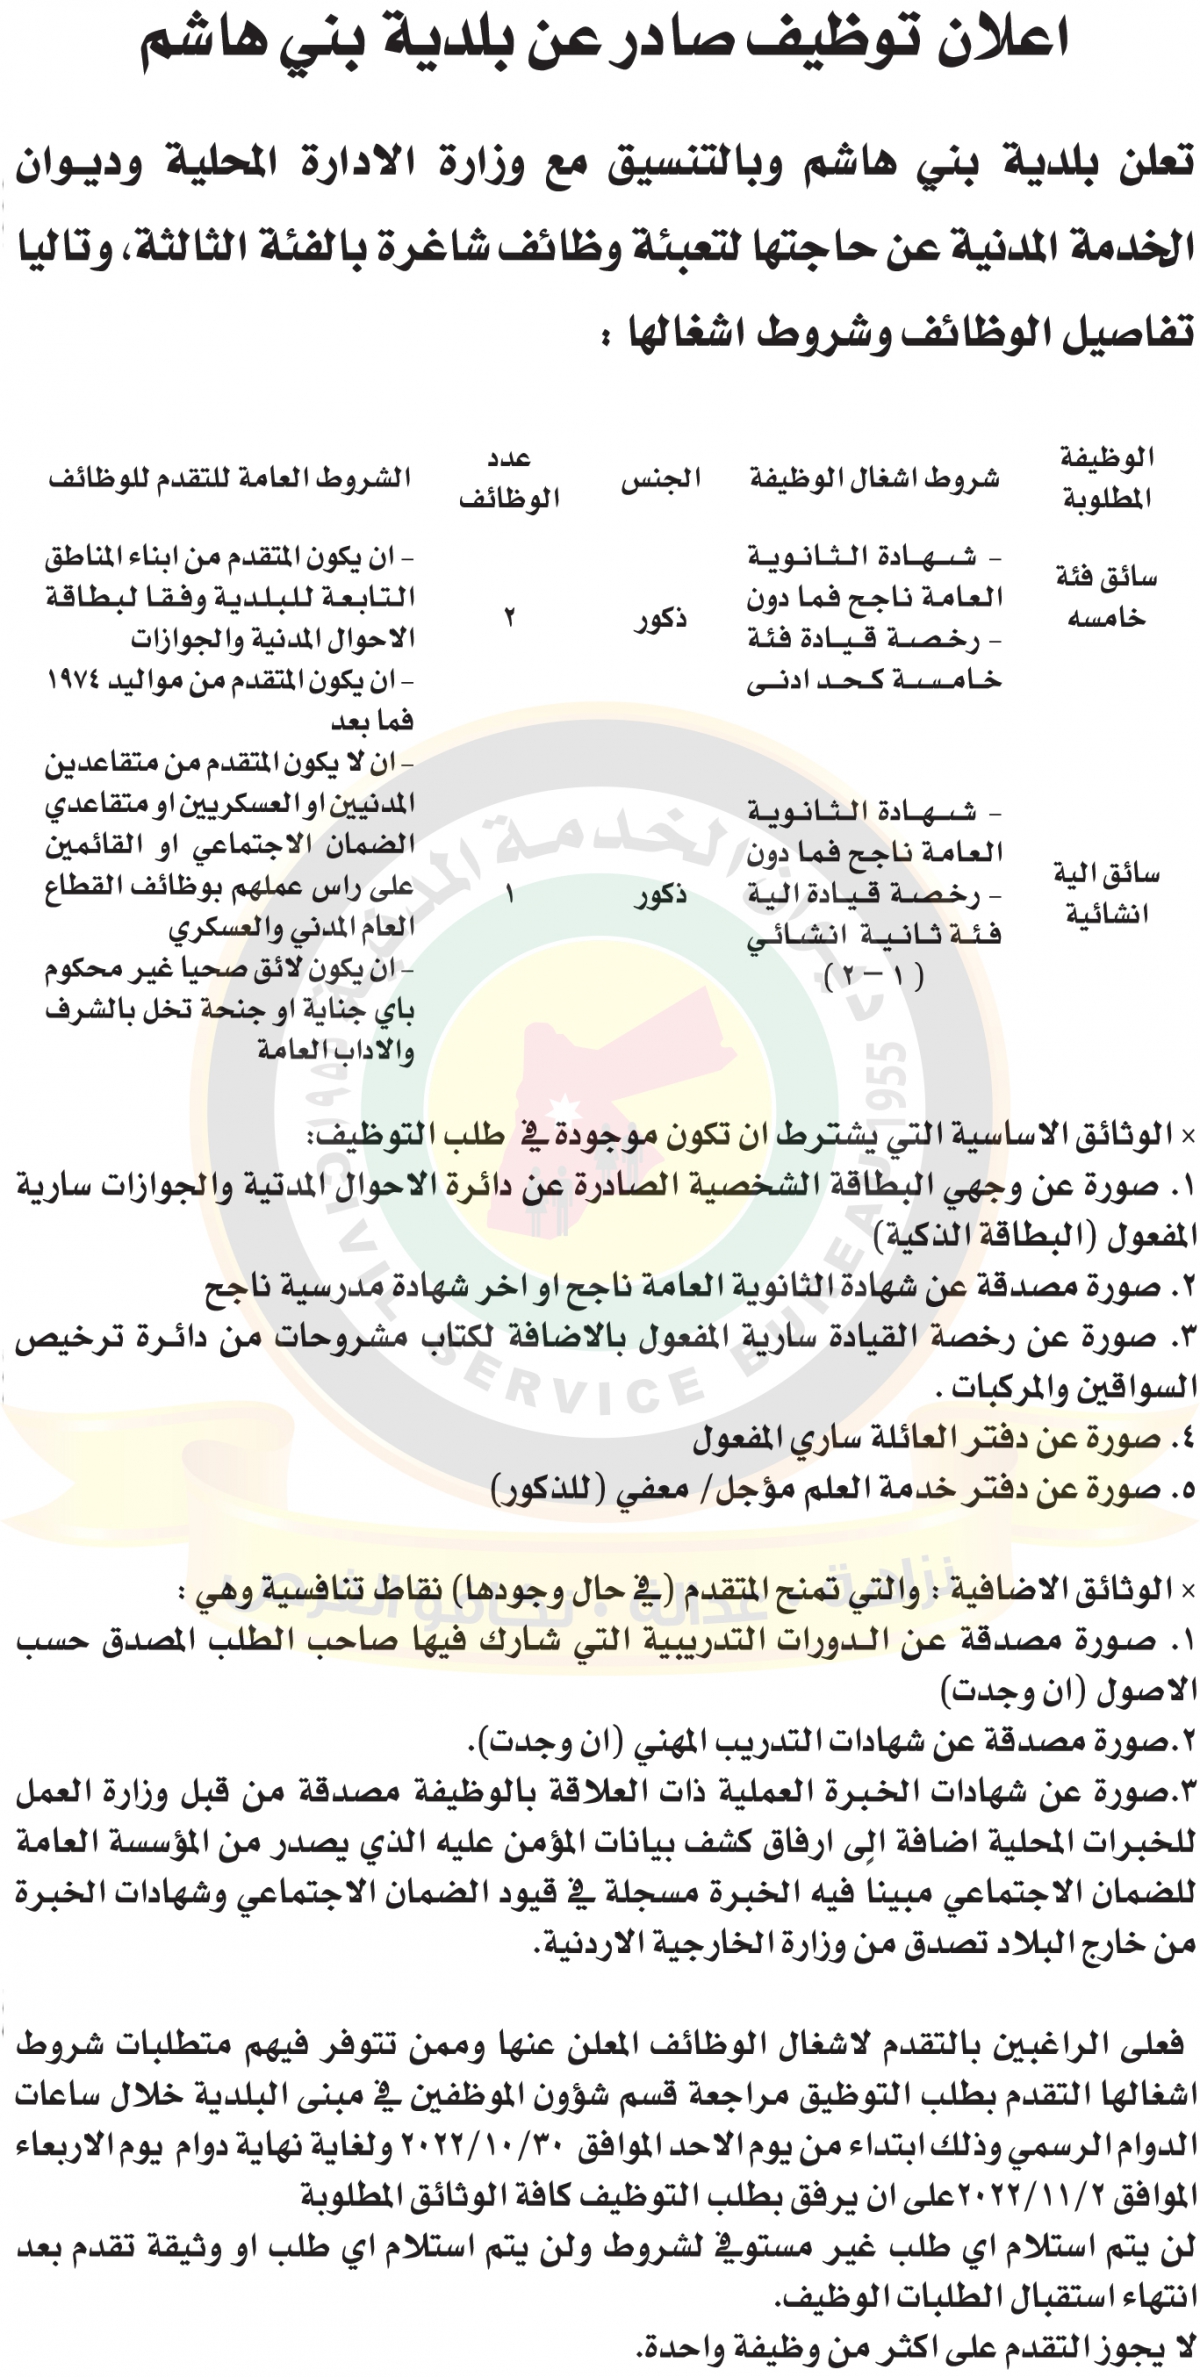 اعلان وظائف شاغرة صادر عن بلدية بني هاشم